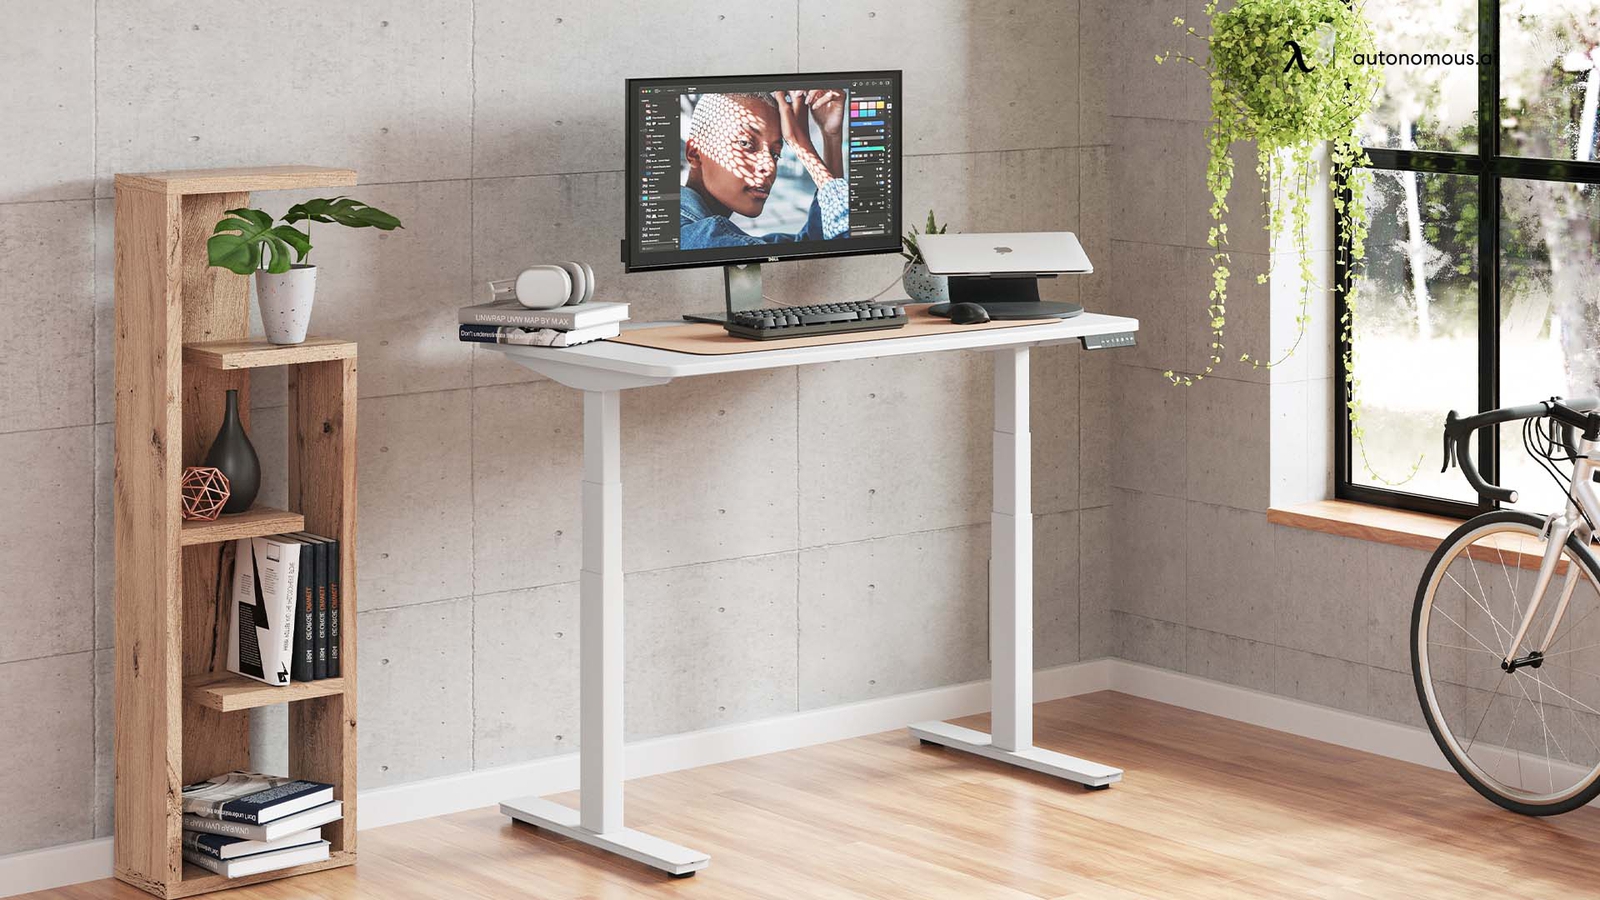 Autonomous Wholesale Standing Desk – Ergonomic Sit-Stand Workstation